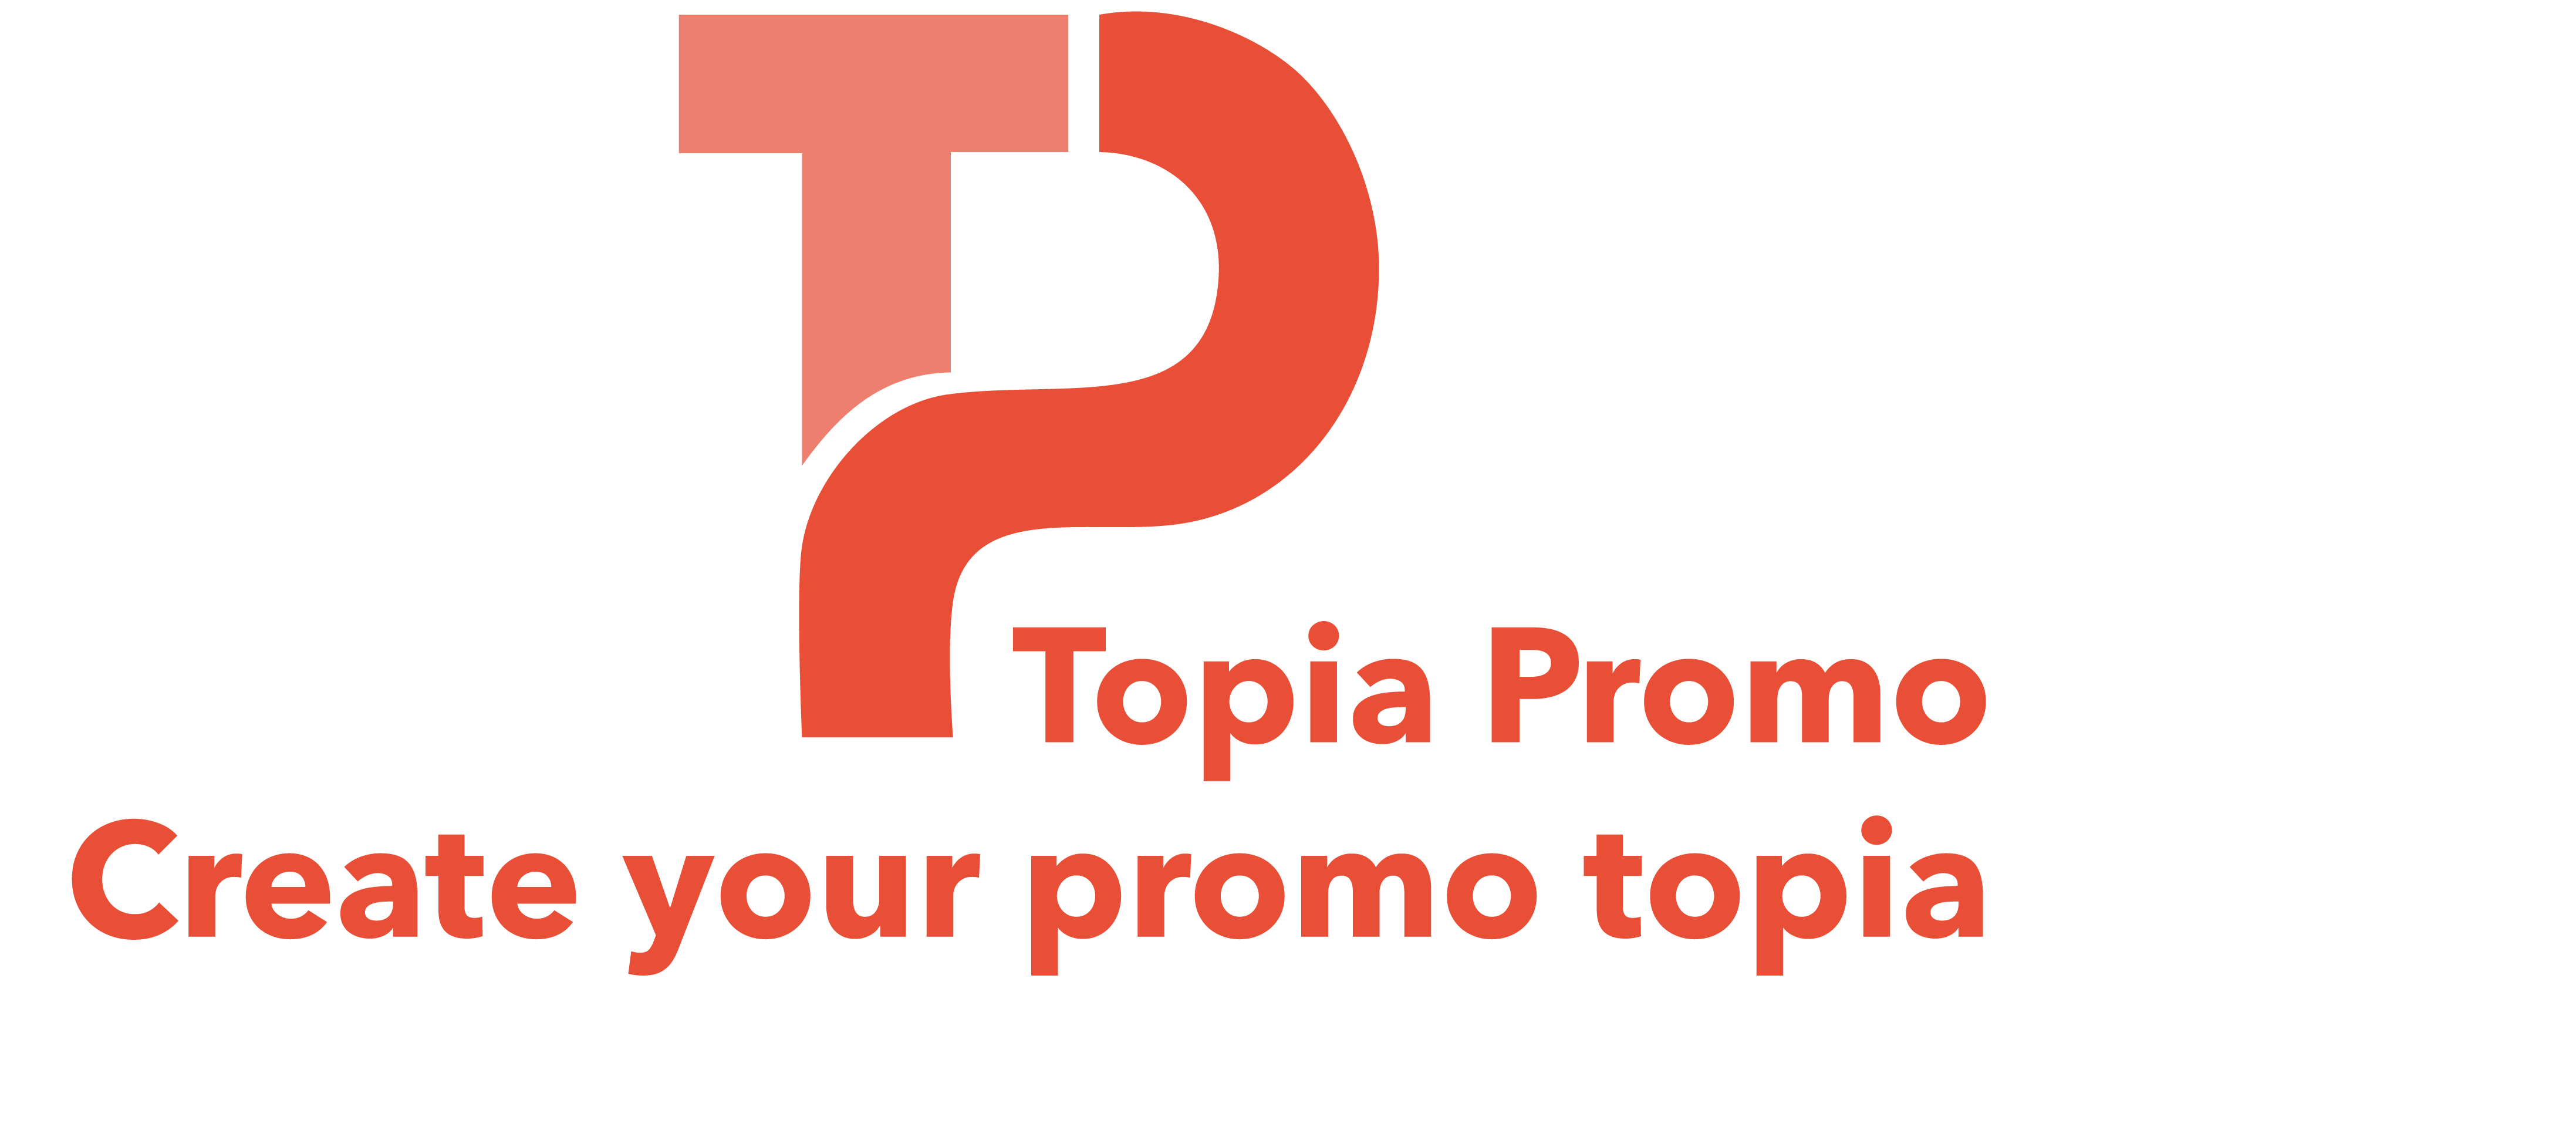 Topia Promo